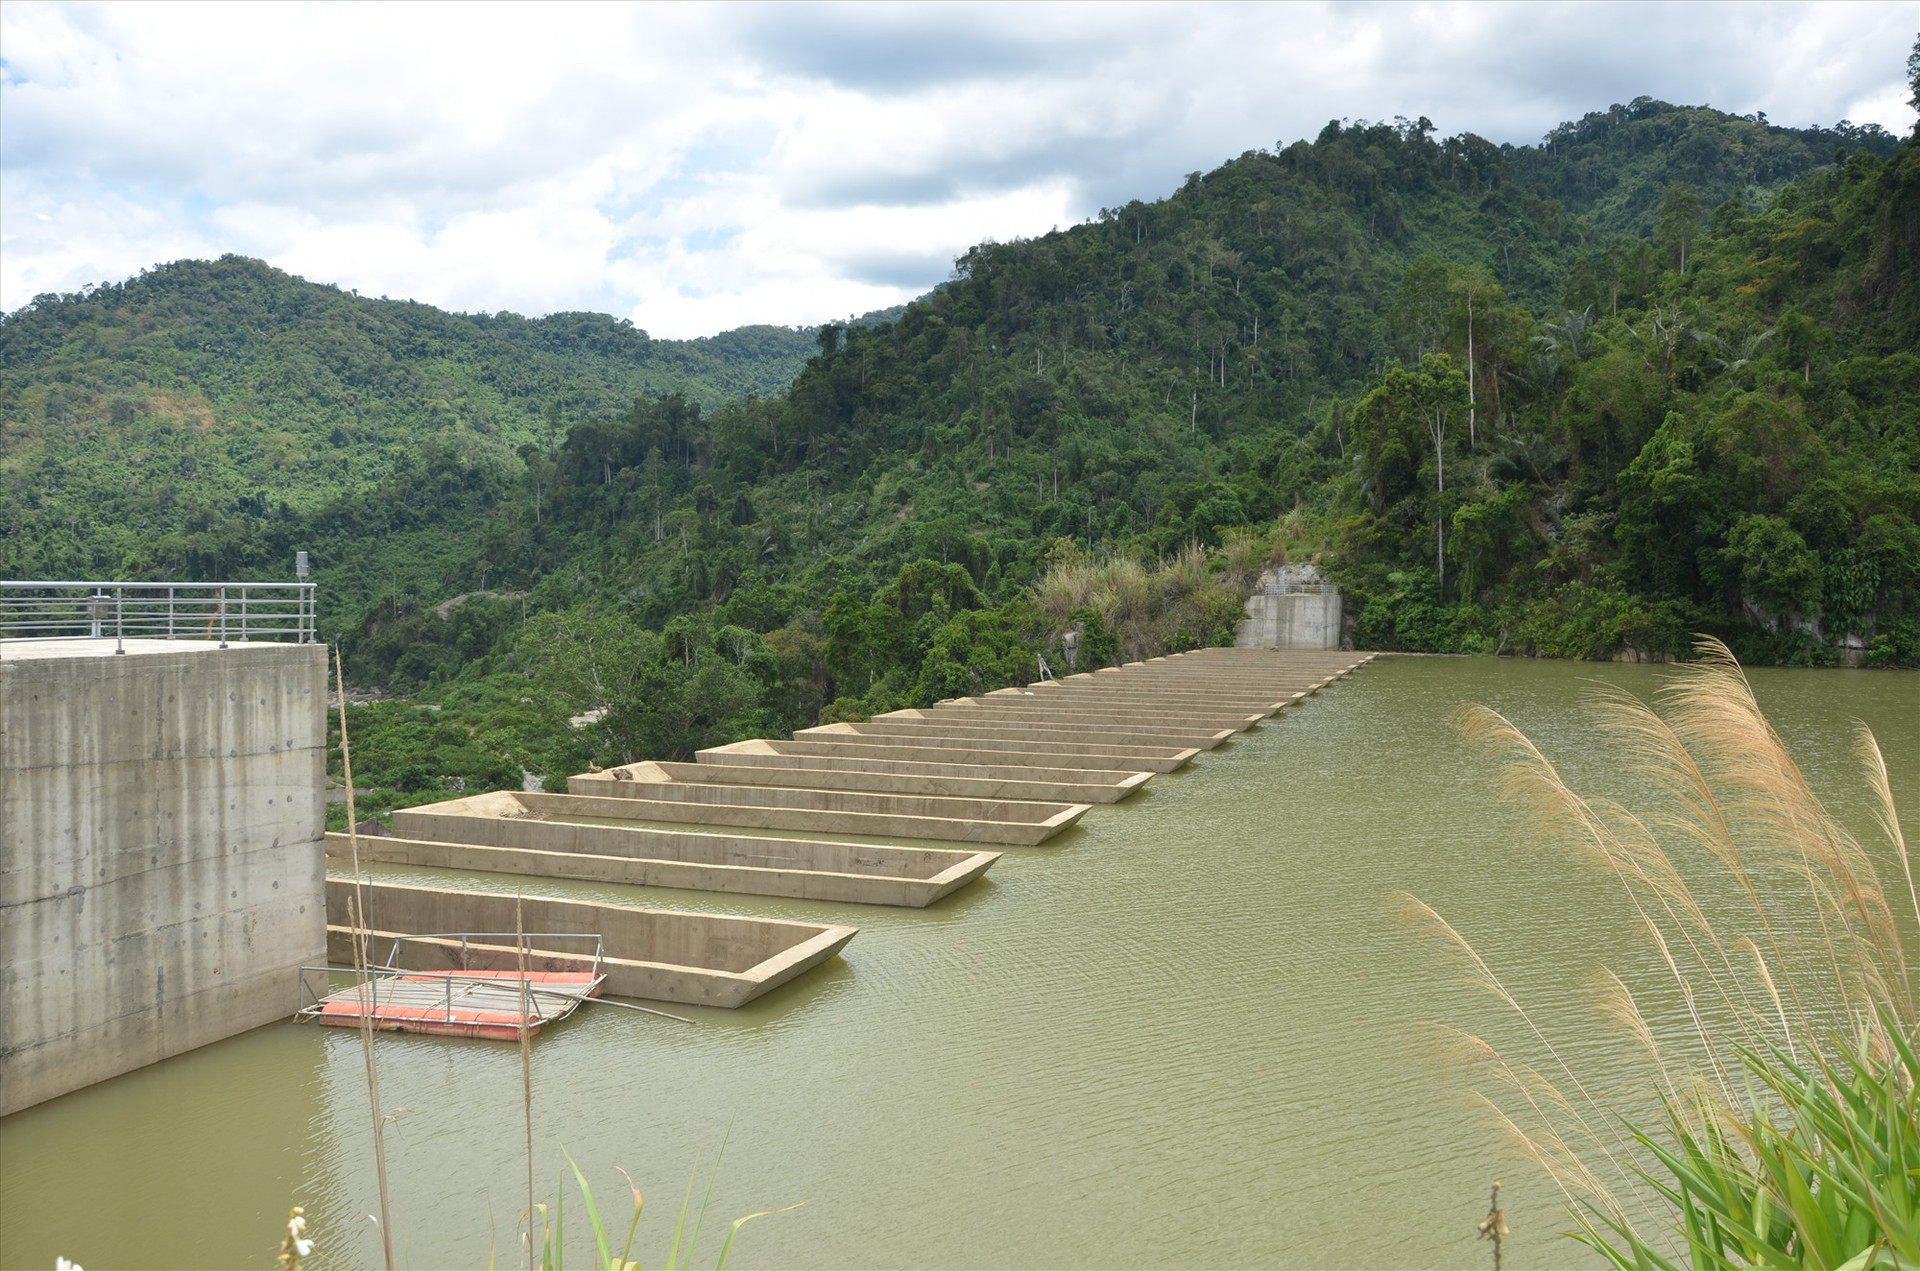 Các nhà máy thủy điện đóng góp lớn vào chính sách chi trả dịch vụ môi trường rừng. TRONG ẢNH: Lưu vực một lòng hồ thủy điện Đắc Mi qua địa phận Phước Sơn.